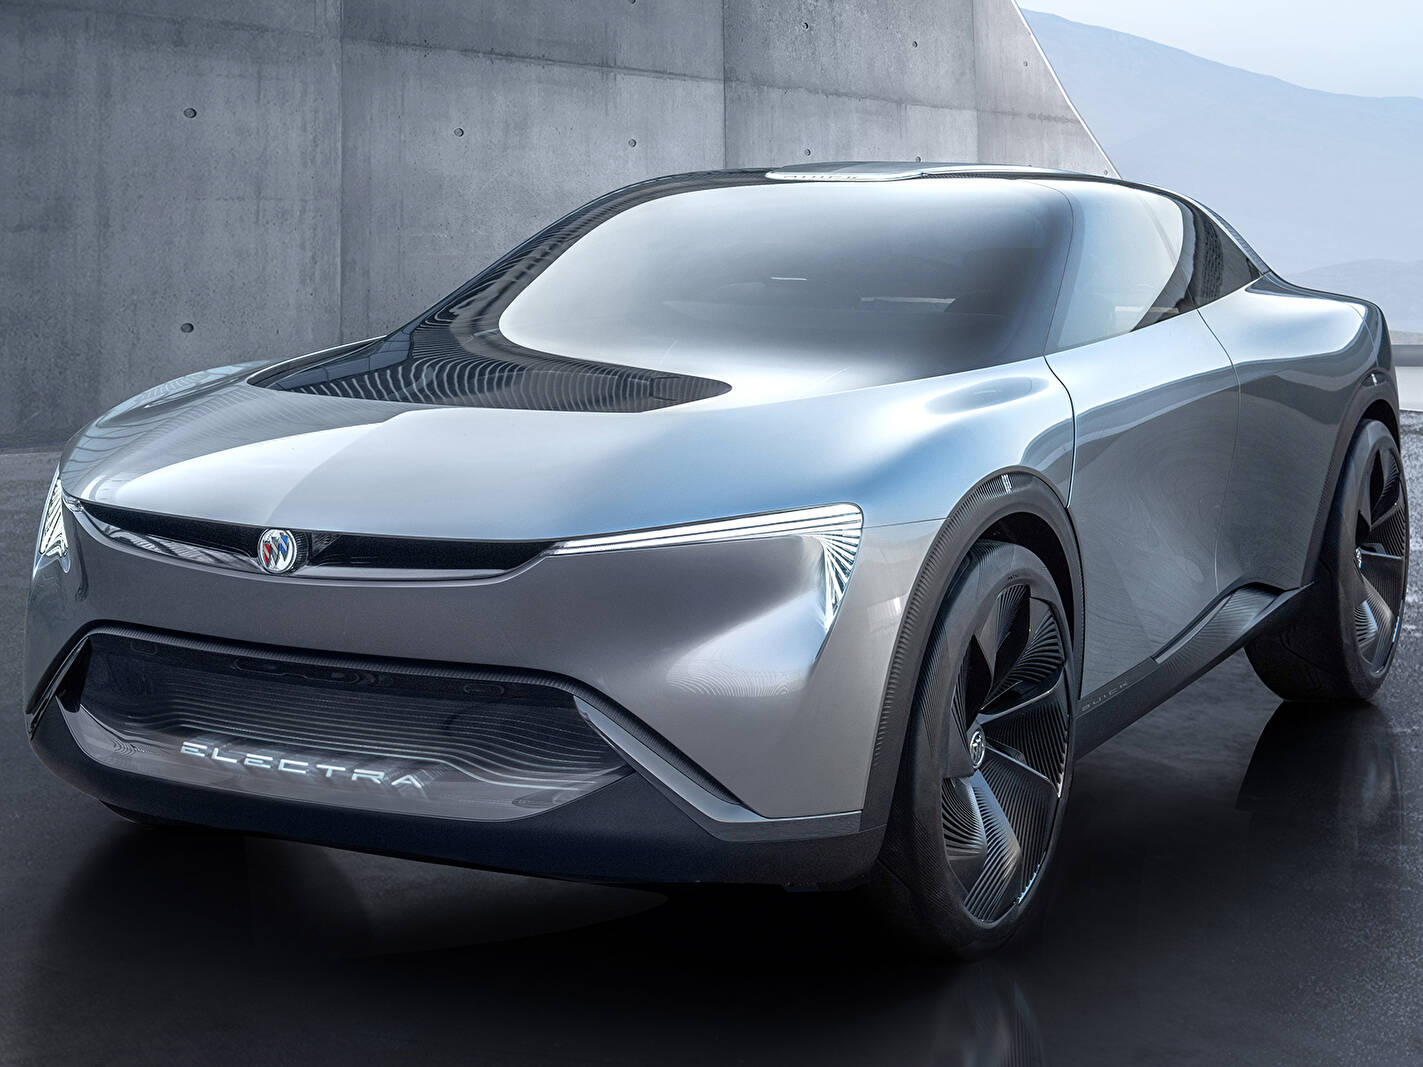 2020 Buick Electra Concept